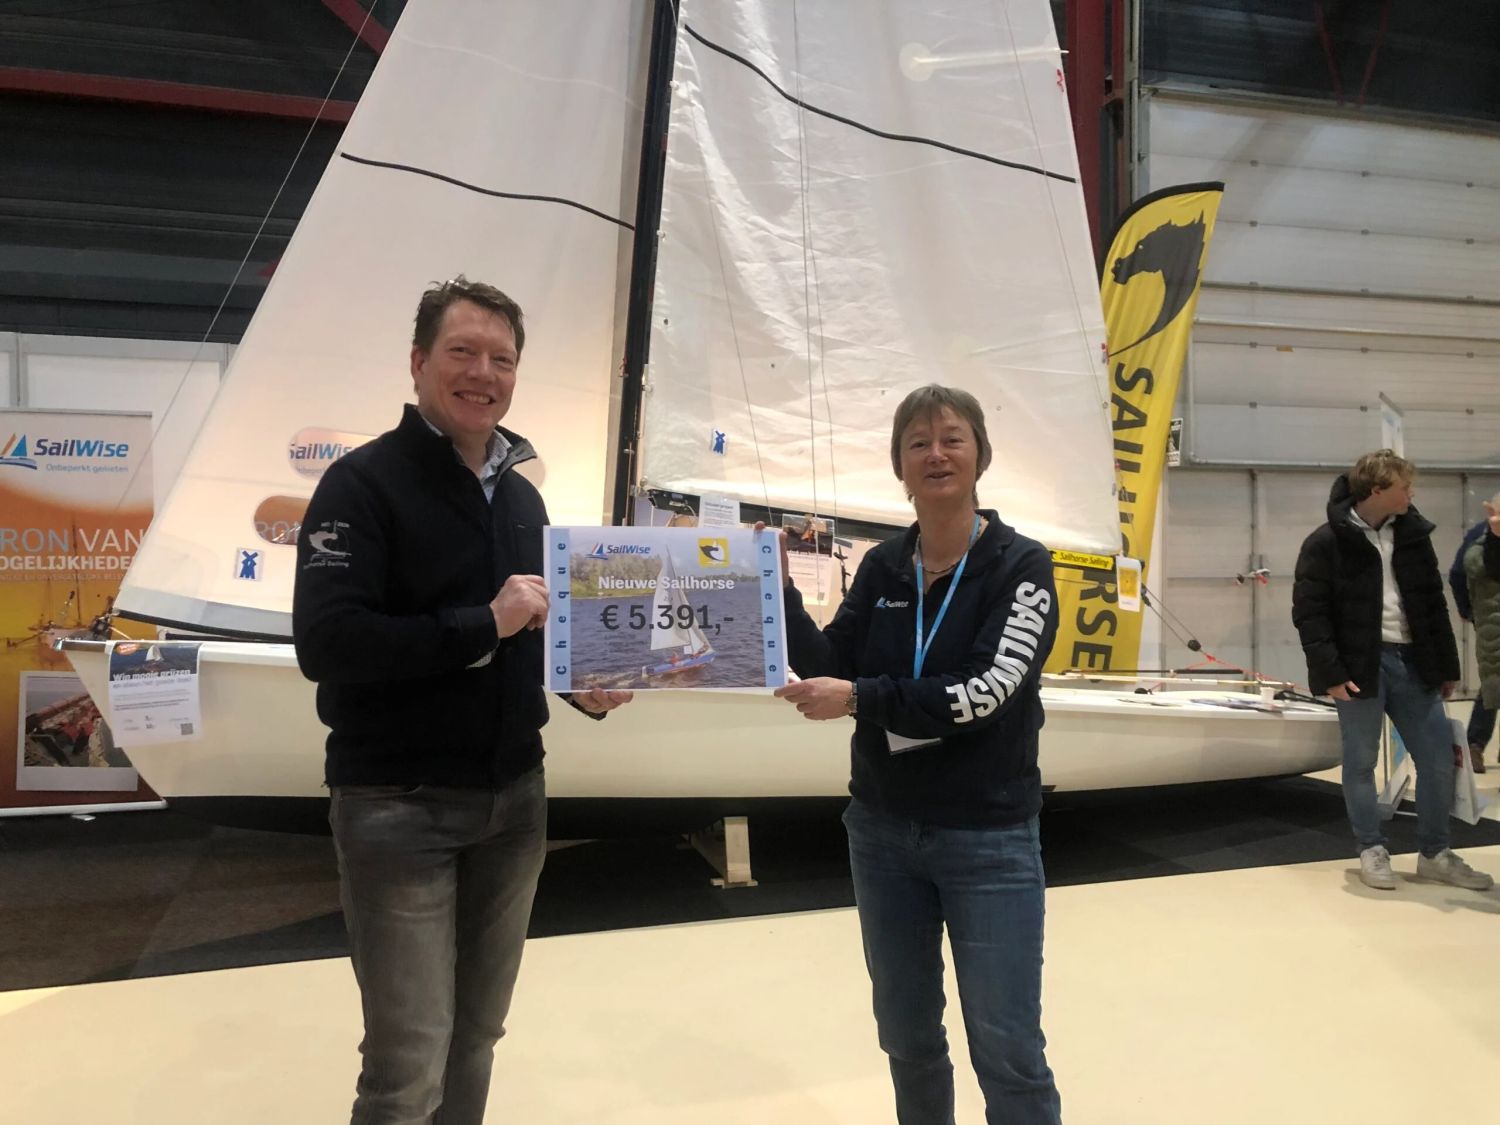 Sailhorse Sailing Club overhandigd een cheque met € 5391,- aan SailWise